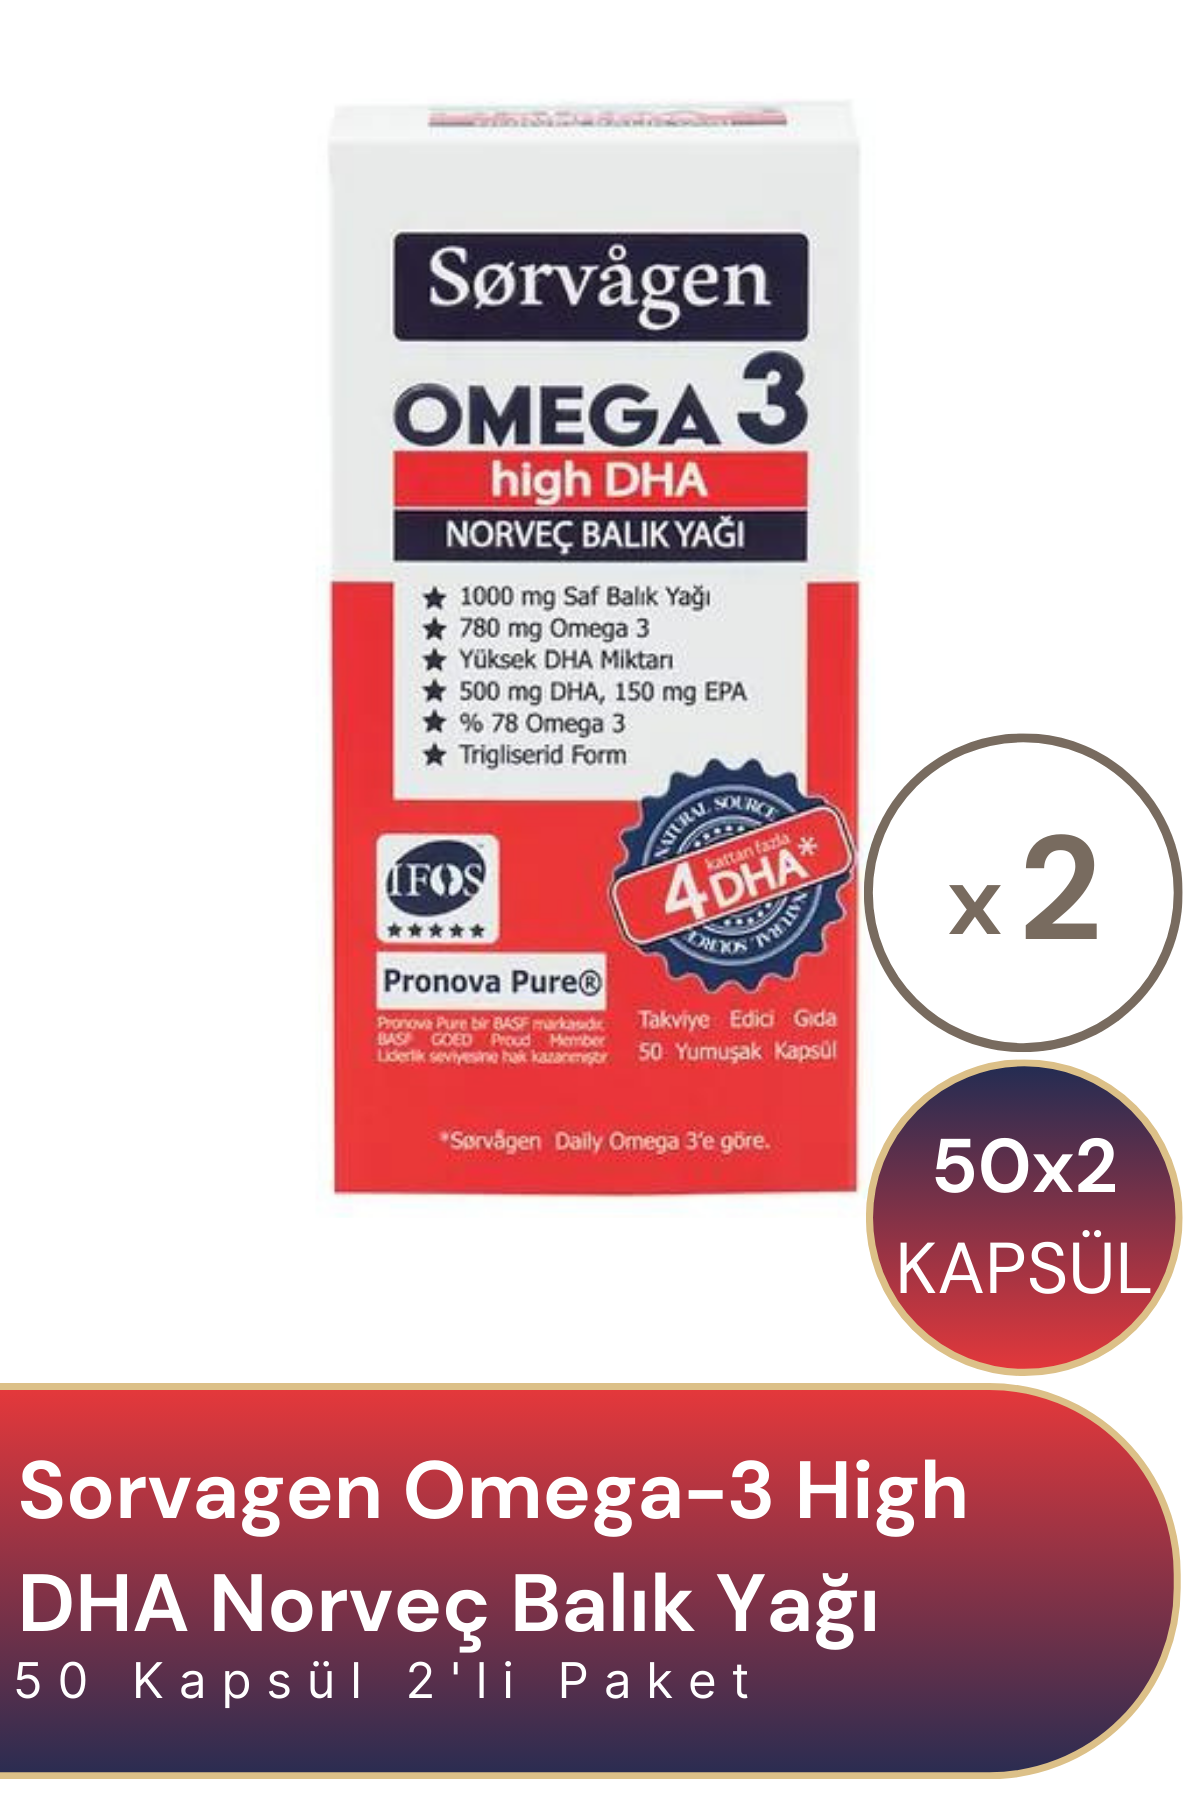 Sorvagen Omega-3 High DHA Norveç Balık Yağı 50 Kapsül 2'li Paket